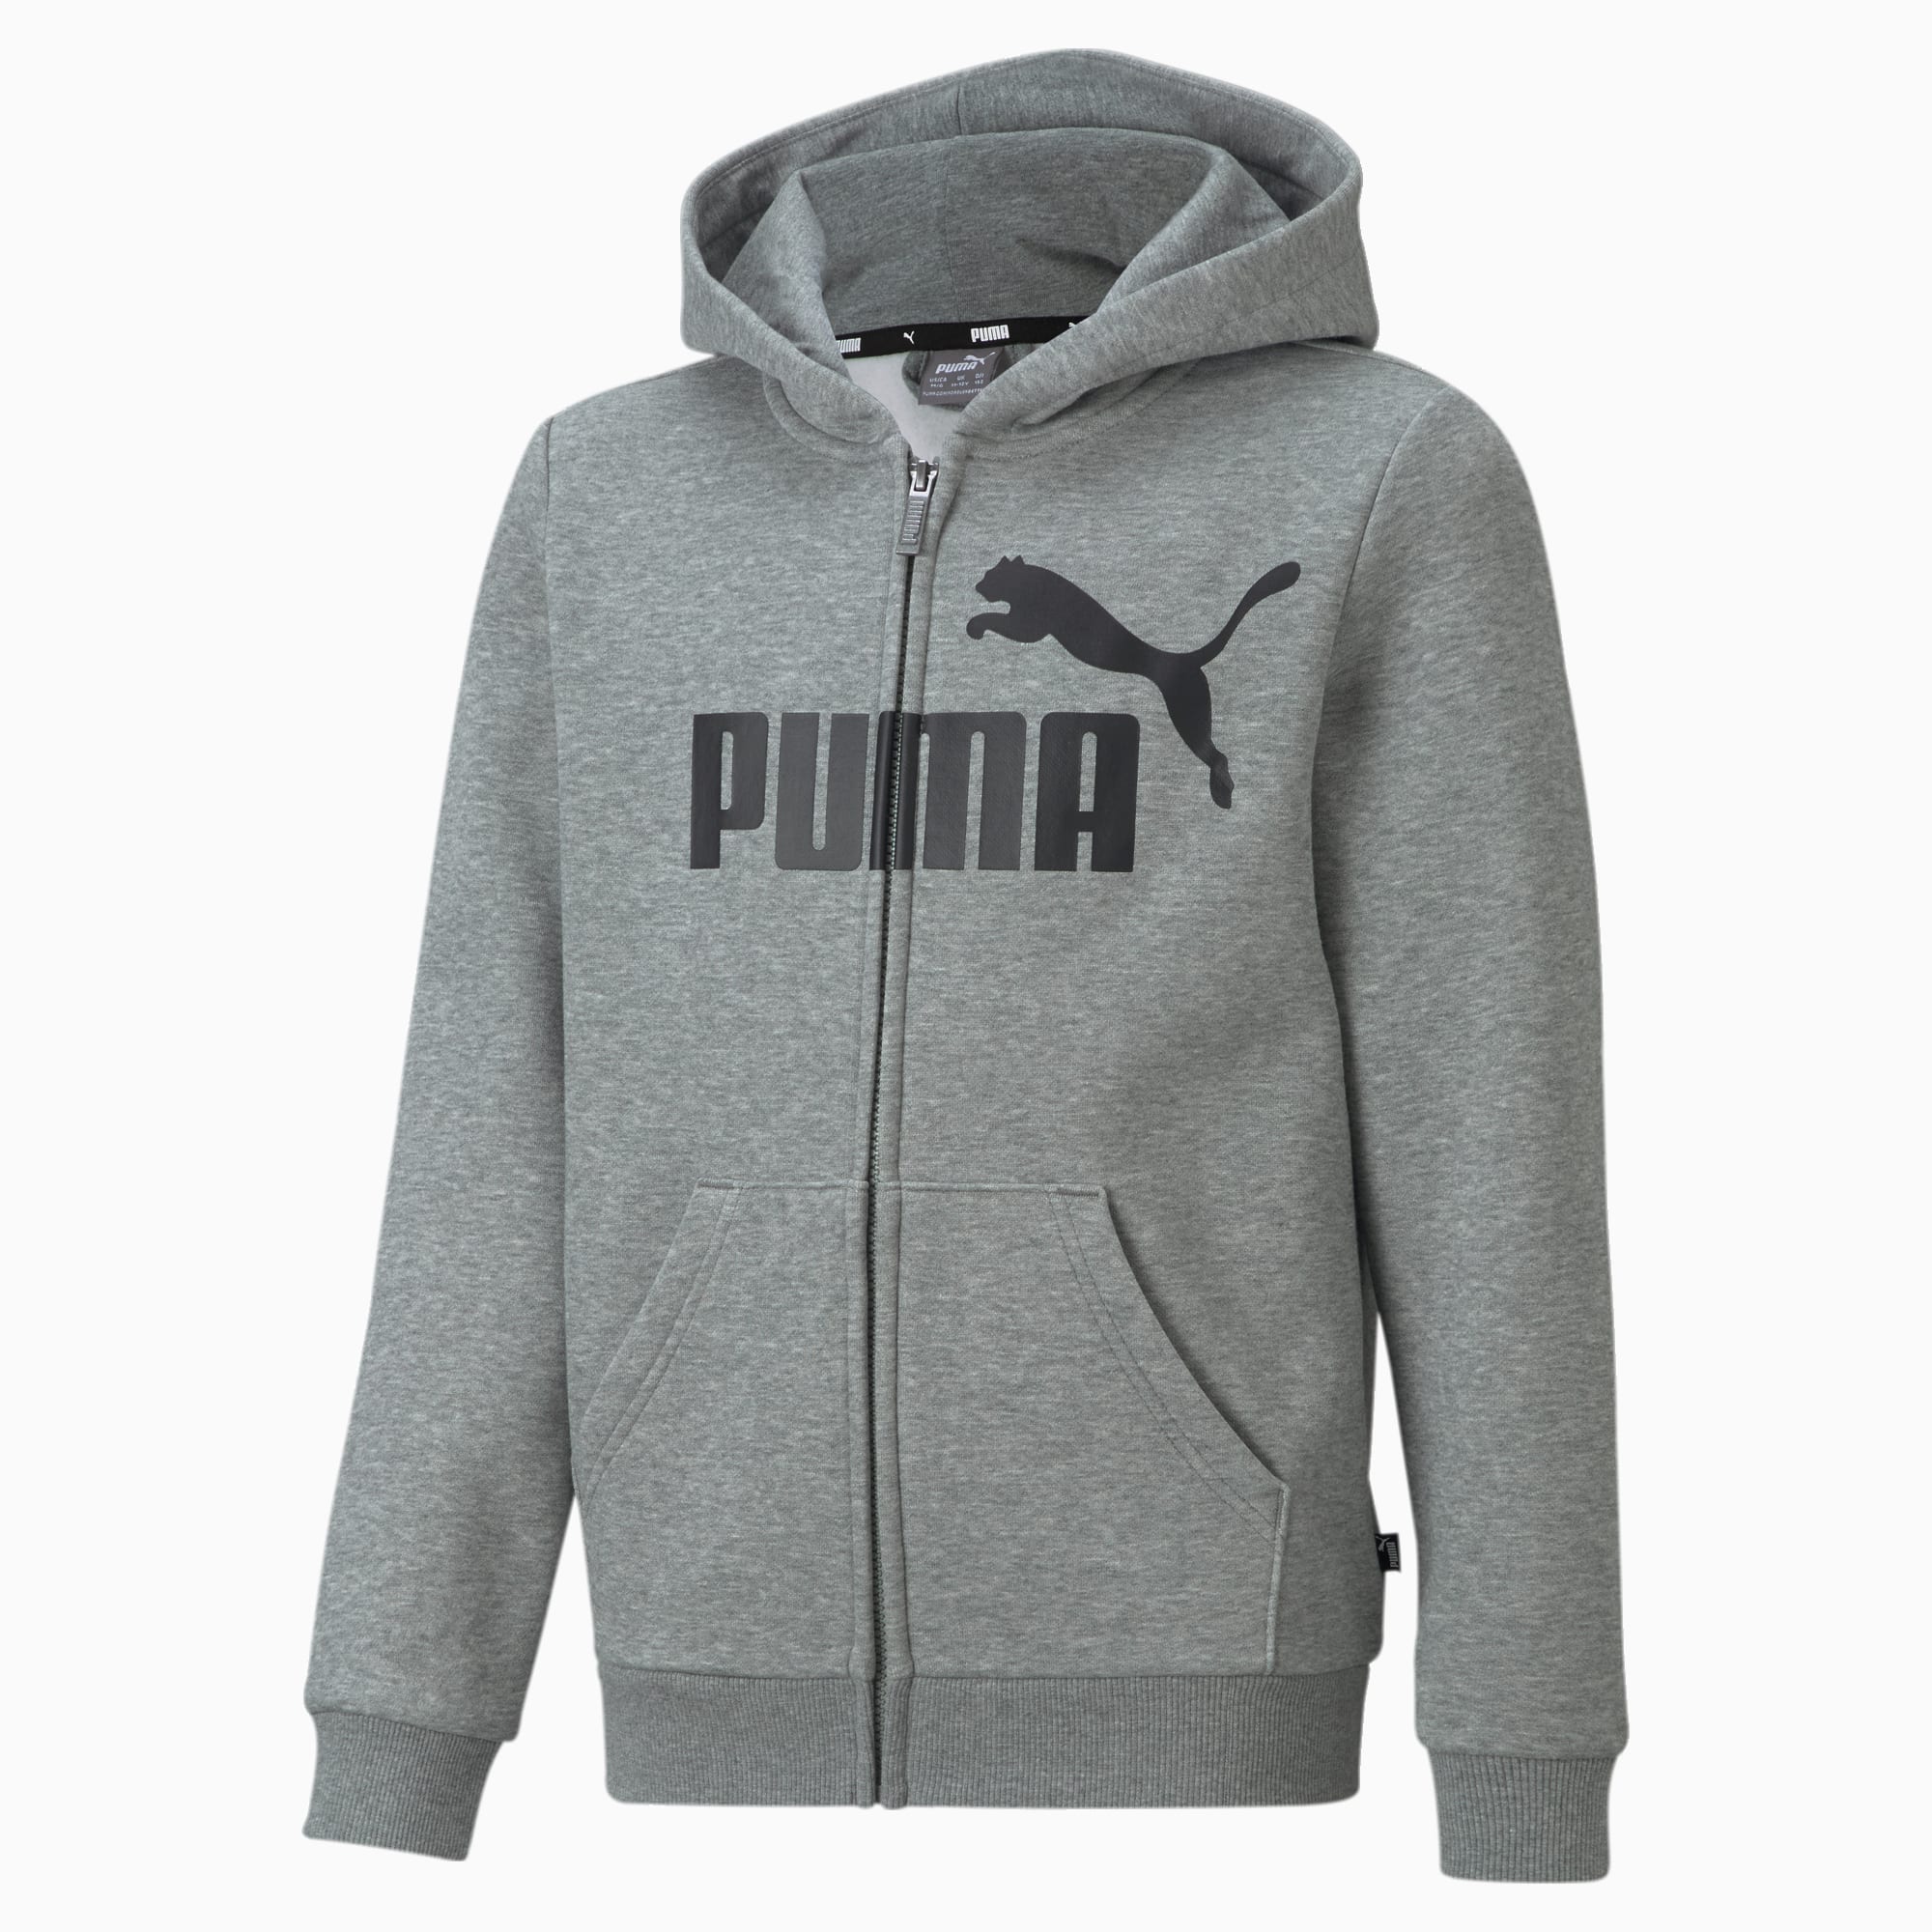 PUMA Essentials Big Logo Jugend Hoodie Mit Durchgehendem Reißverschluss Für Kinder, Mit Heide, Grau, Größe: 116, Kleidung